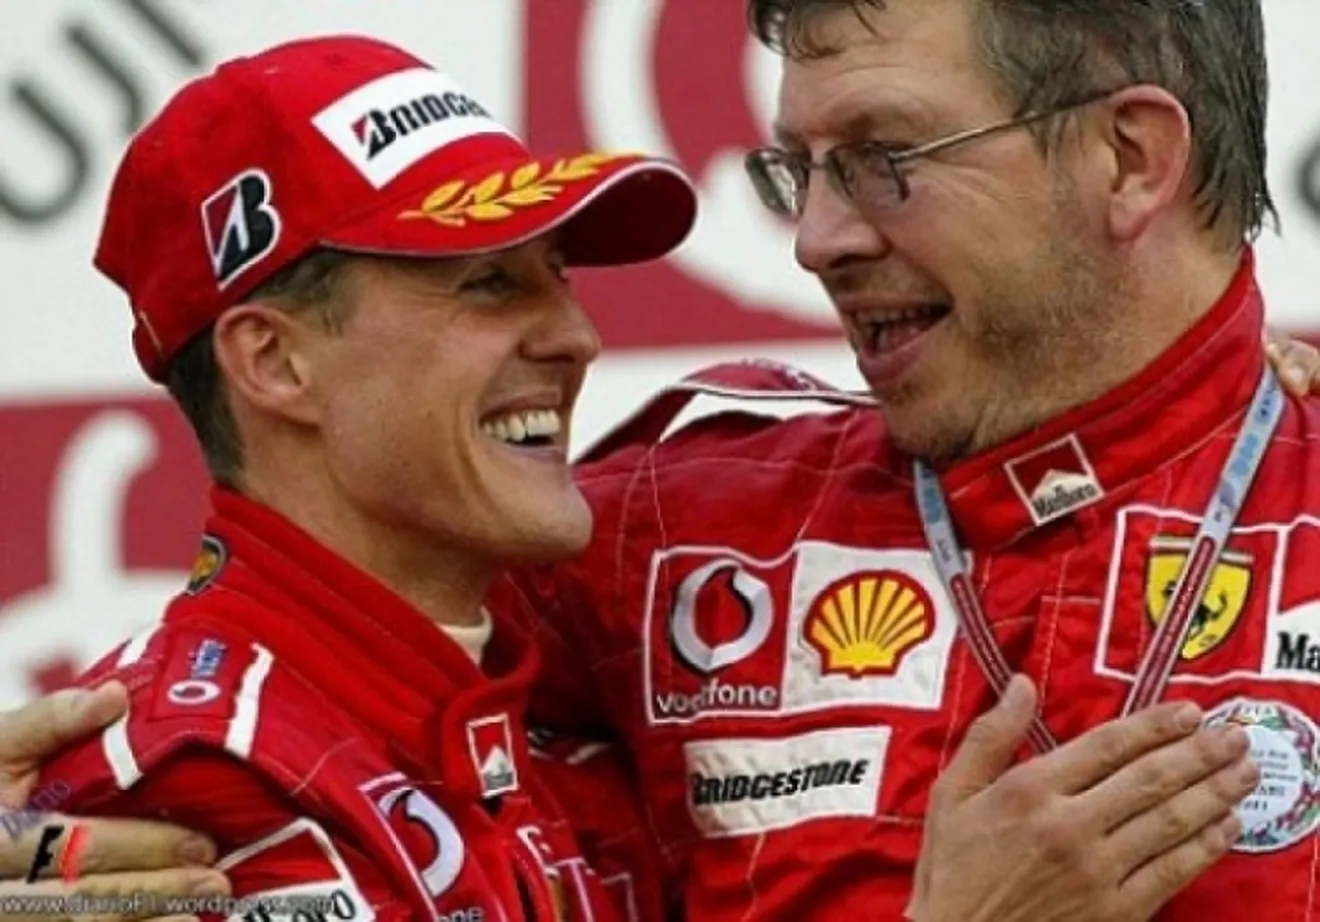 Ross Brawn encantado de volver a trabajar con Schumacher